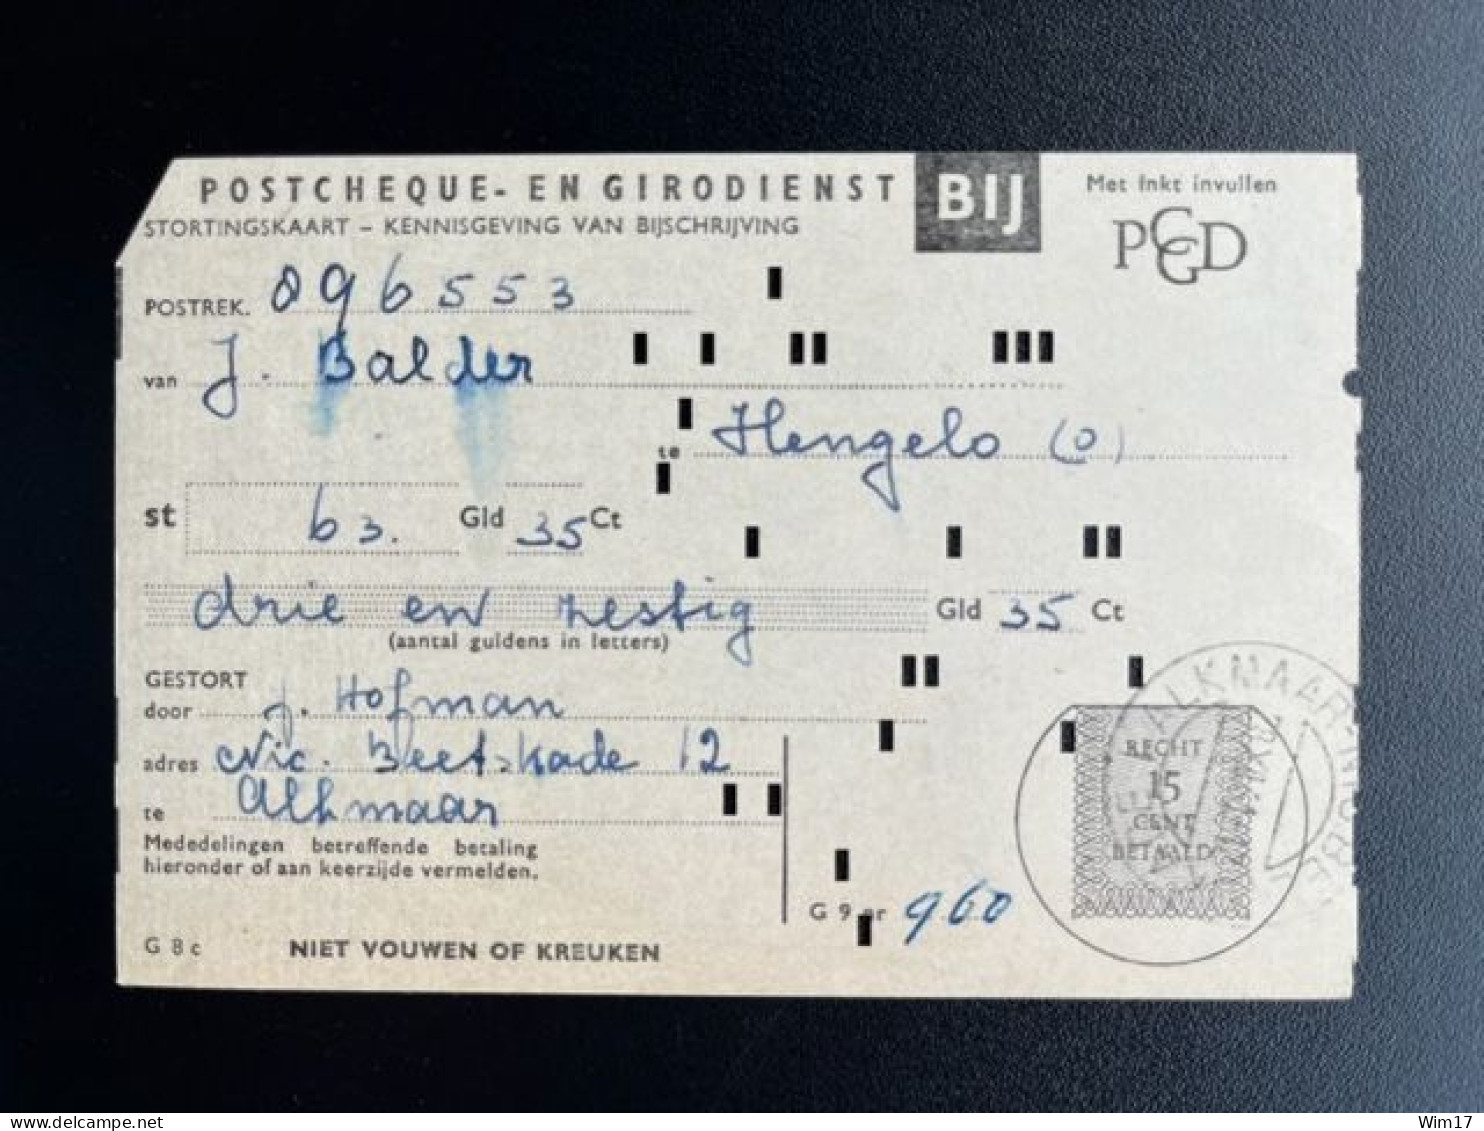 NETHERLANDS 1961 ALKMAAR 28-12-1961 PAYMENT RECEIPT POSTGIRO NEDERLAND ACCEPTGIRO STORTINGSRECHT - Lettres & Documents